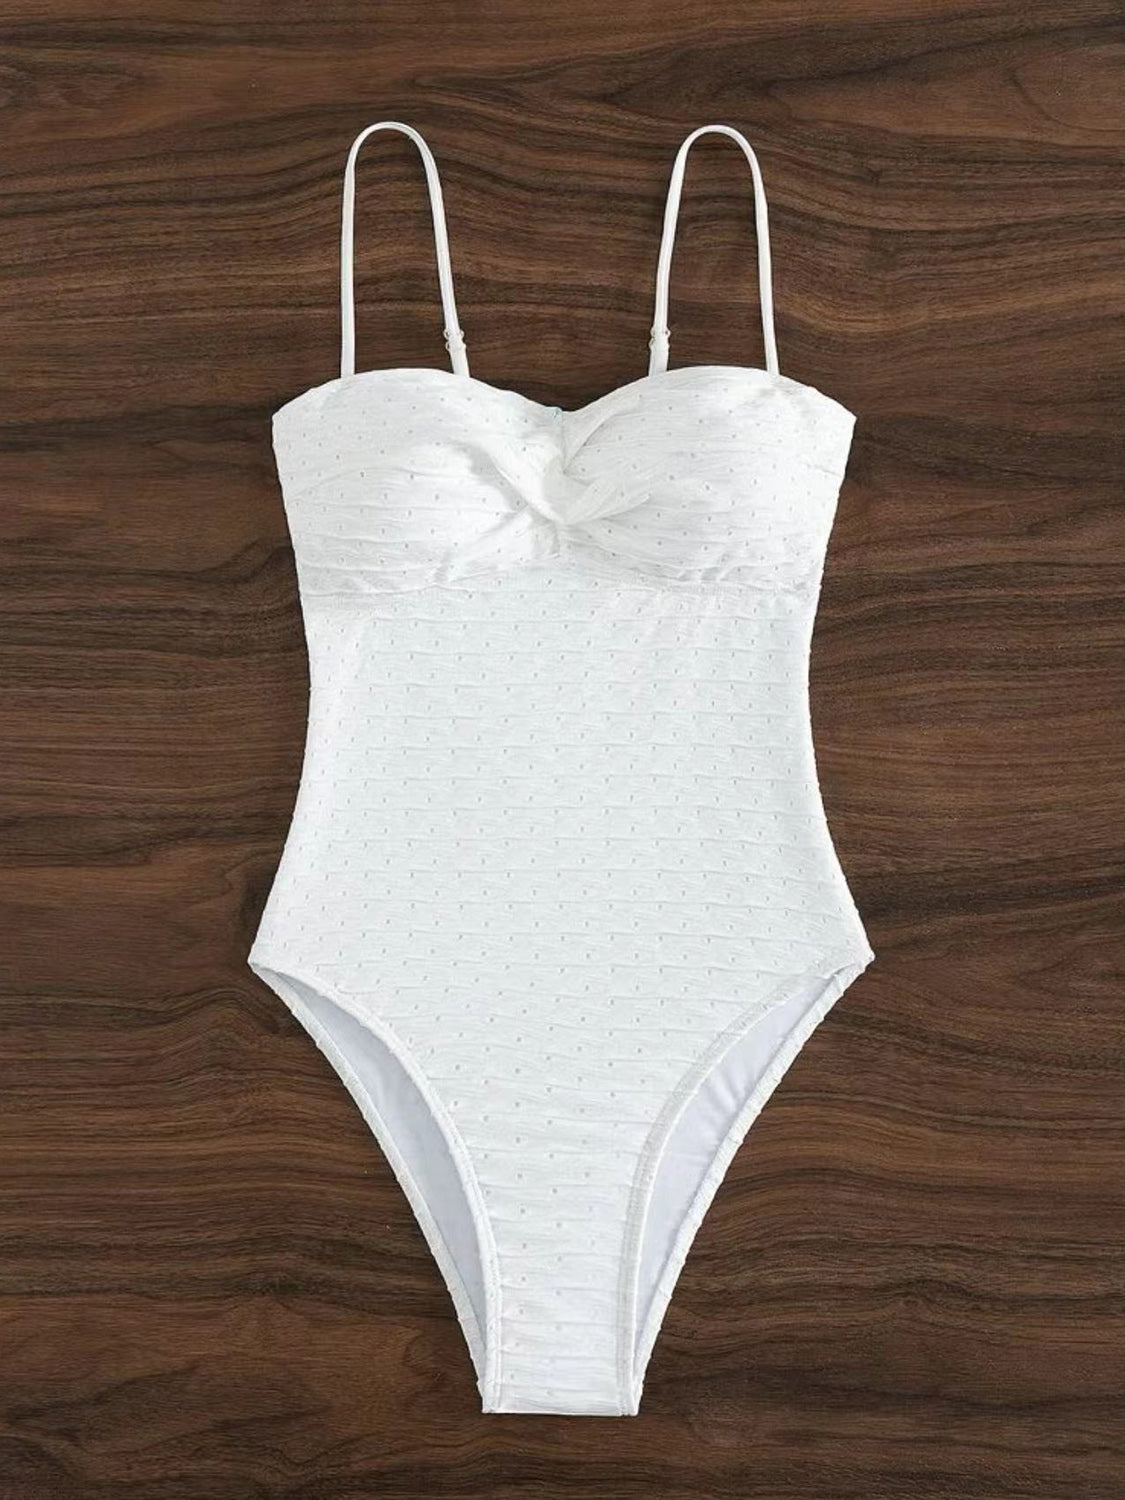 TEEK - White Sweetheart Neck Spaghetti Strap Swimsuit SWIMWEAR TEEK Trend S  